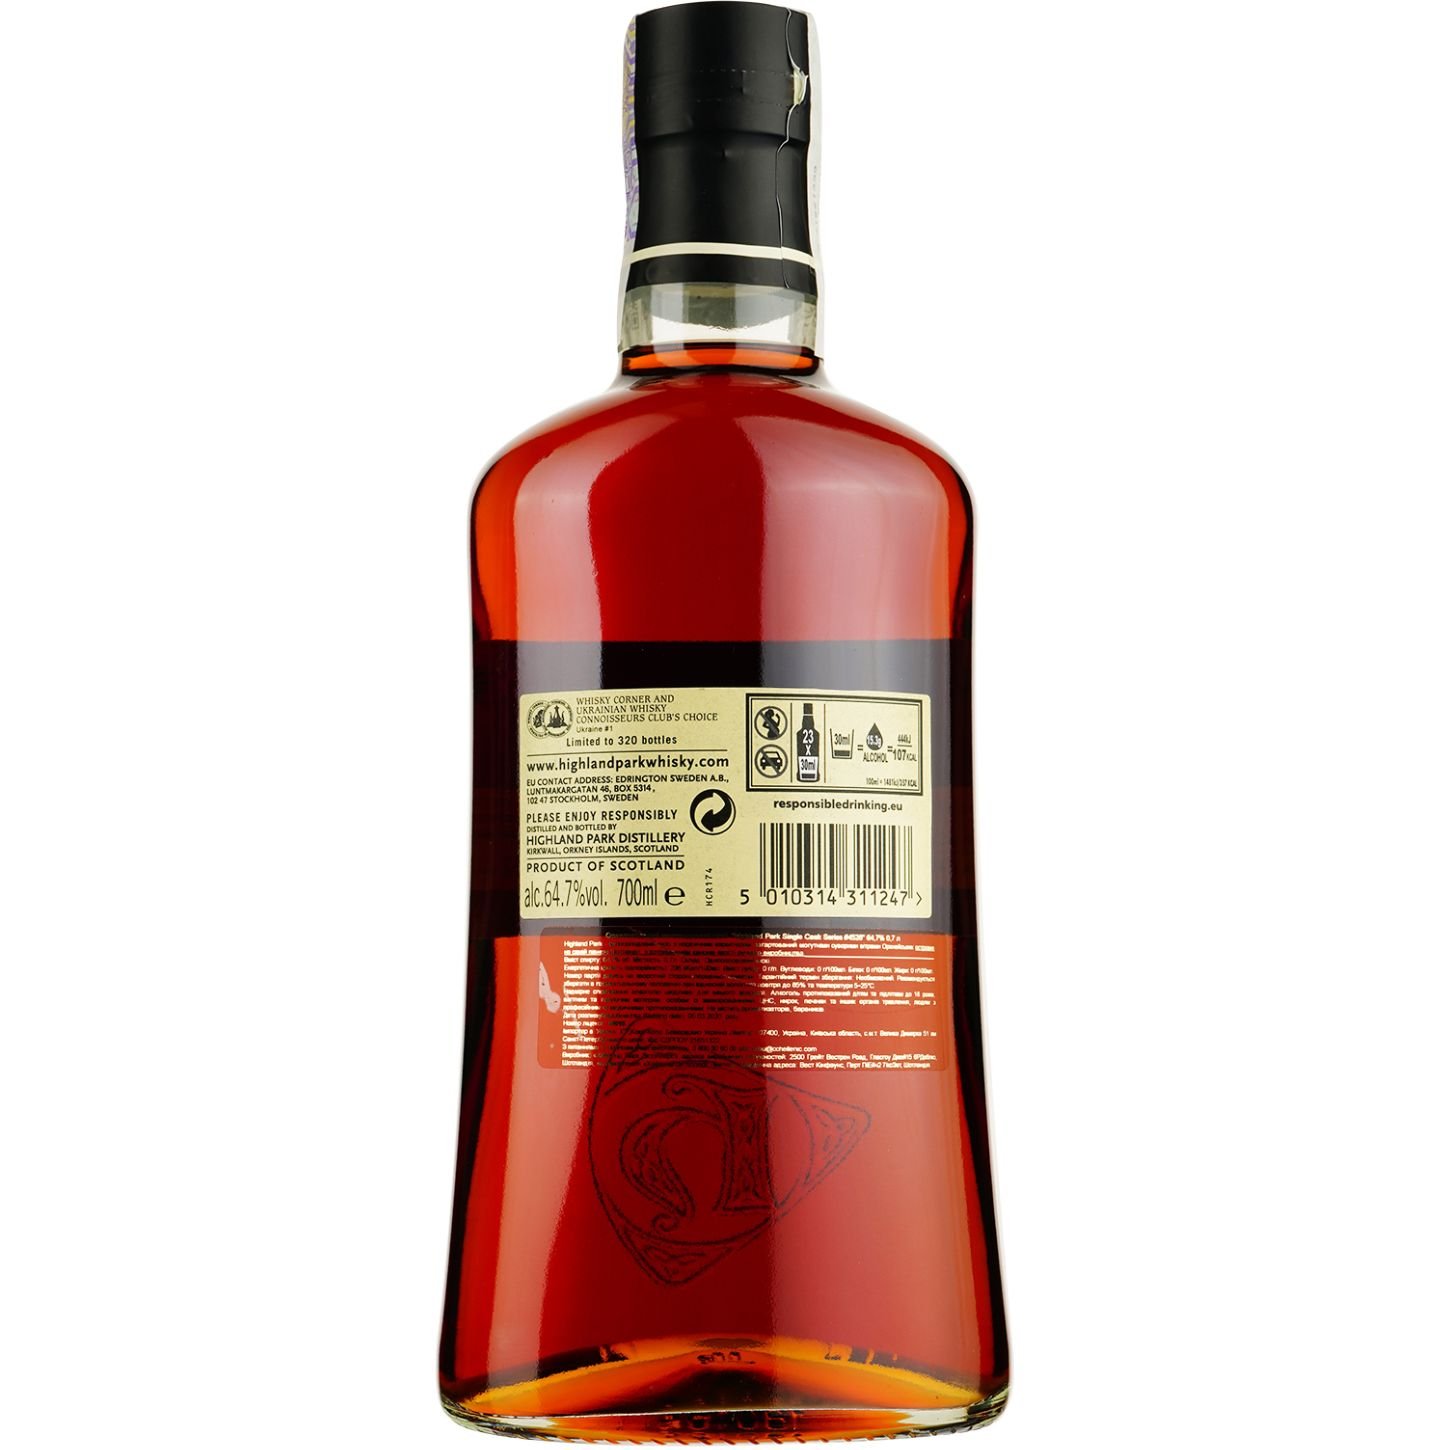 Виски Highland Park 12 Years Old Ukraine #1 Single Malt Scotch Whisky, в подарочной упаковке, 64,7%, 0,7 л - фото 3